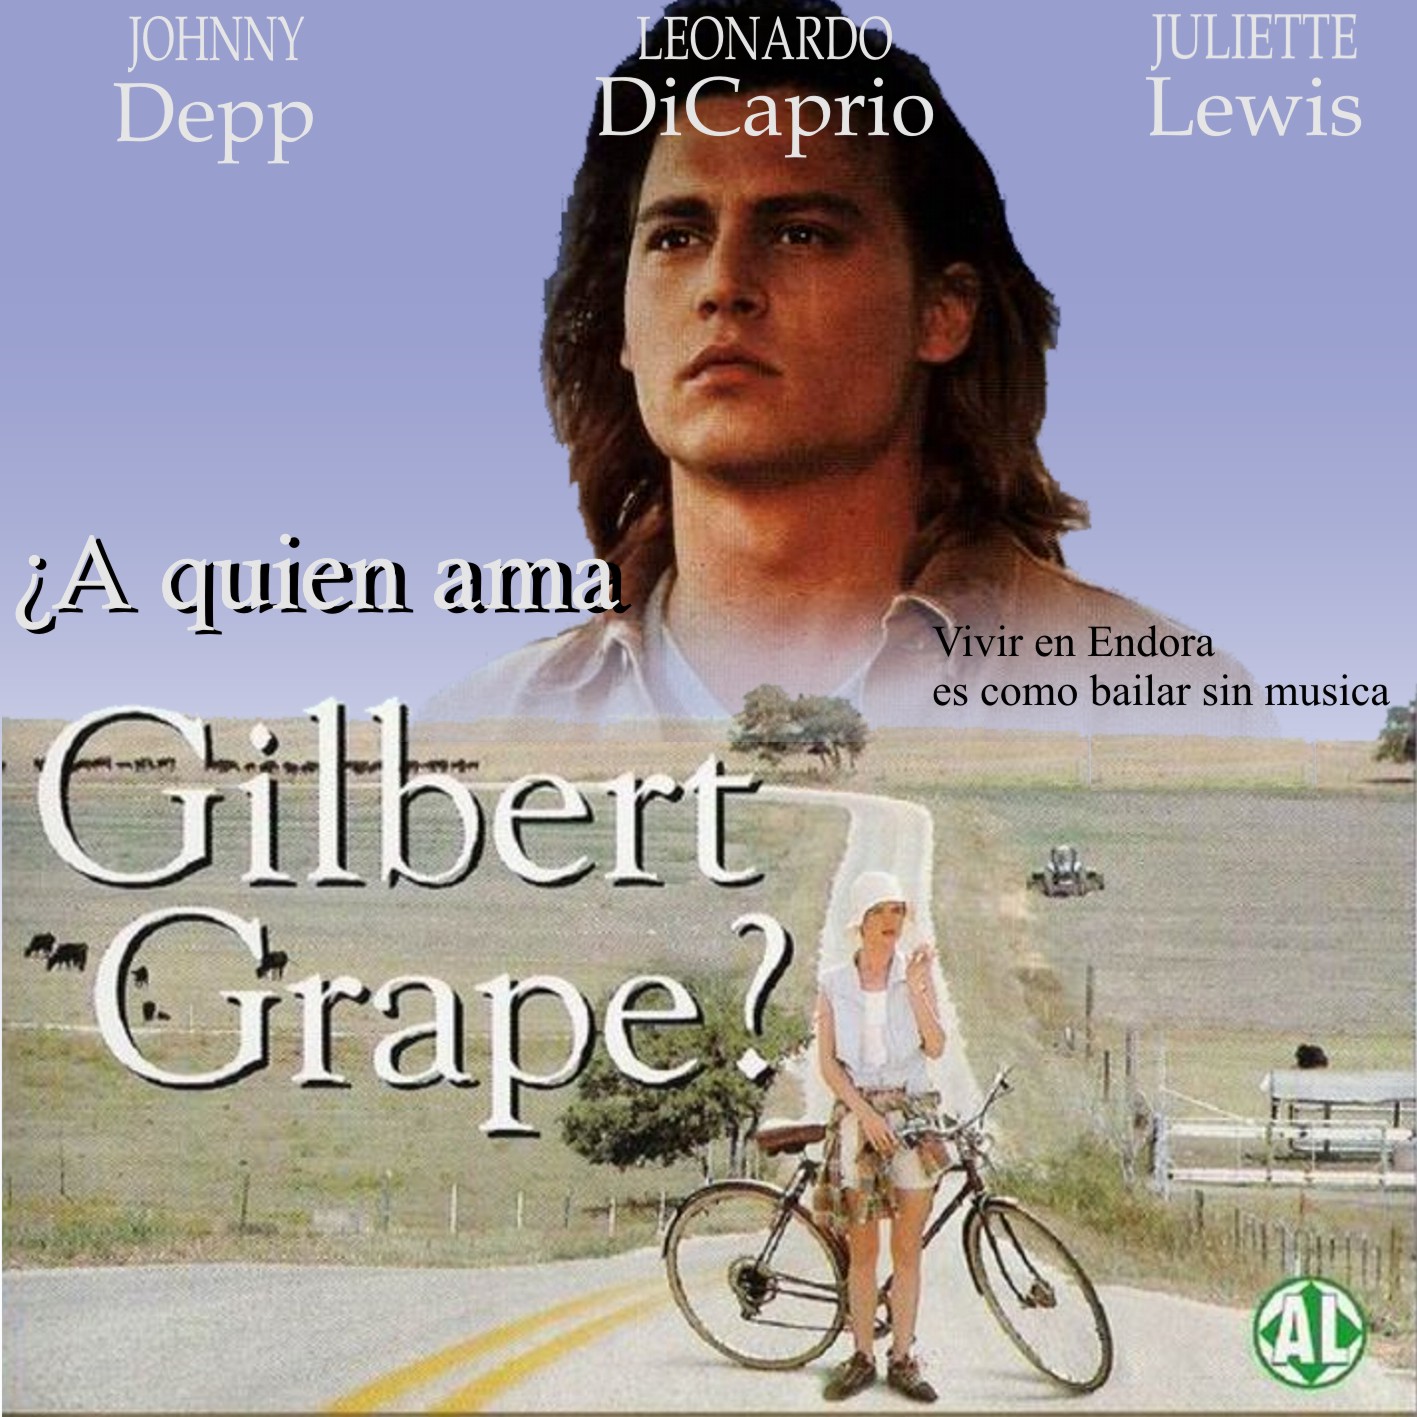 [A+quien+ama+Gilbert+Grape_Frontall.jpg]